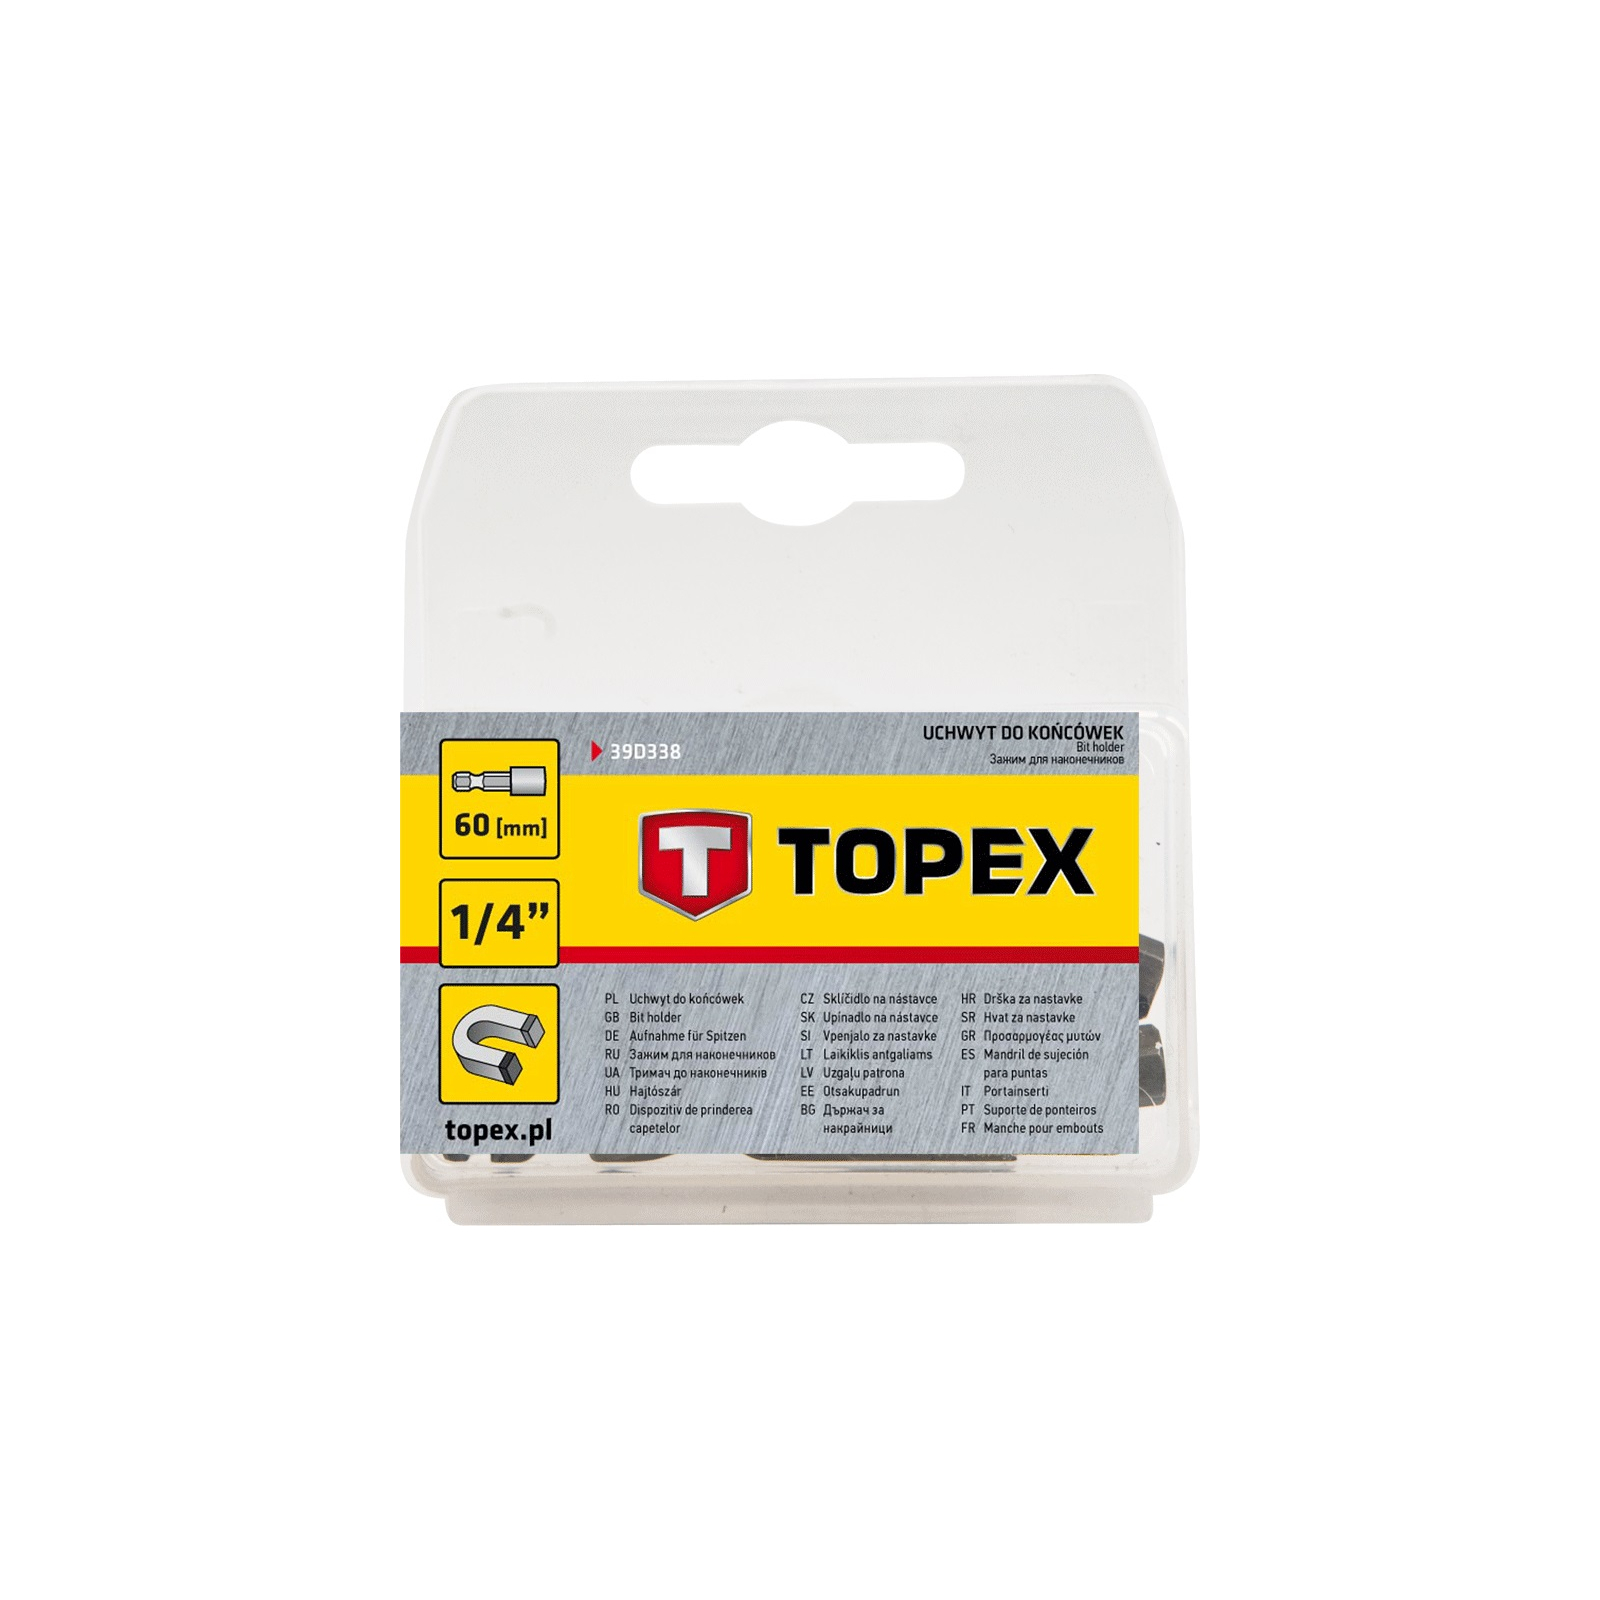 Тримач для біт Topex 1/4" 60 мм (39D338) зображення 2